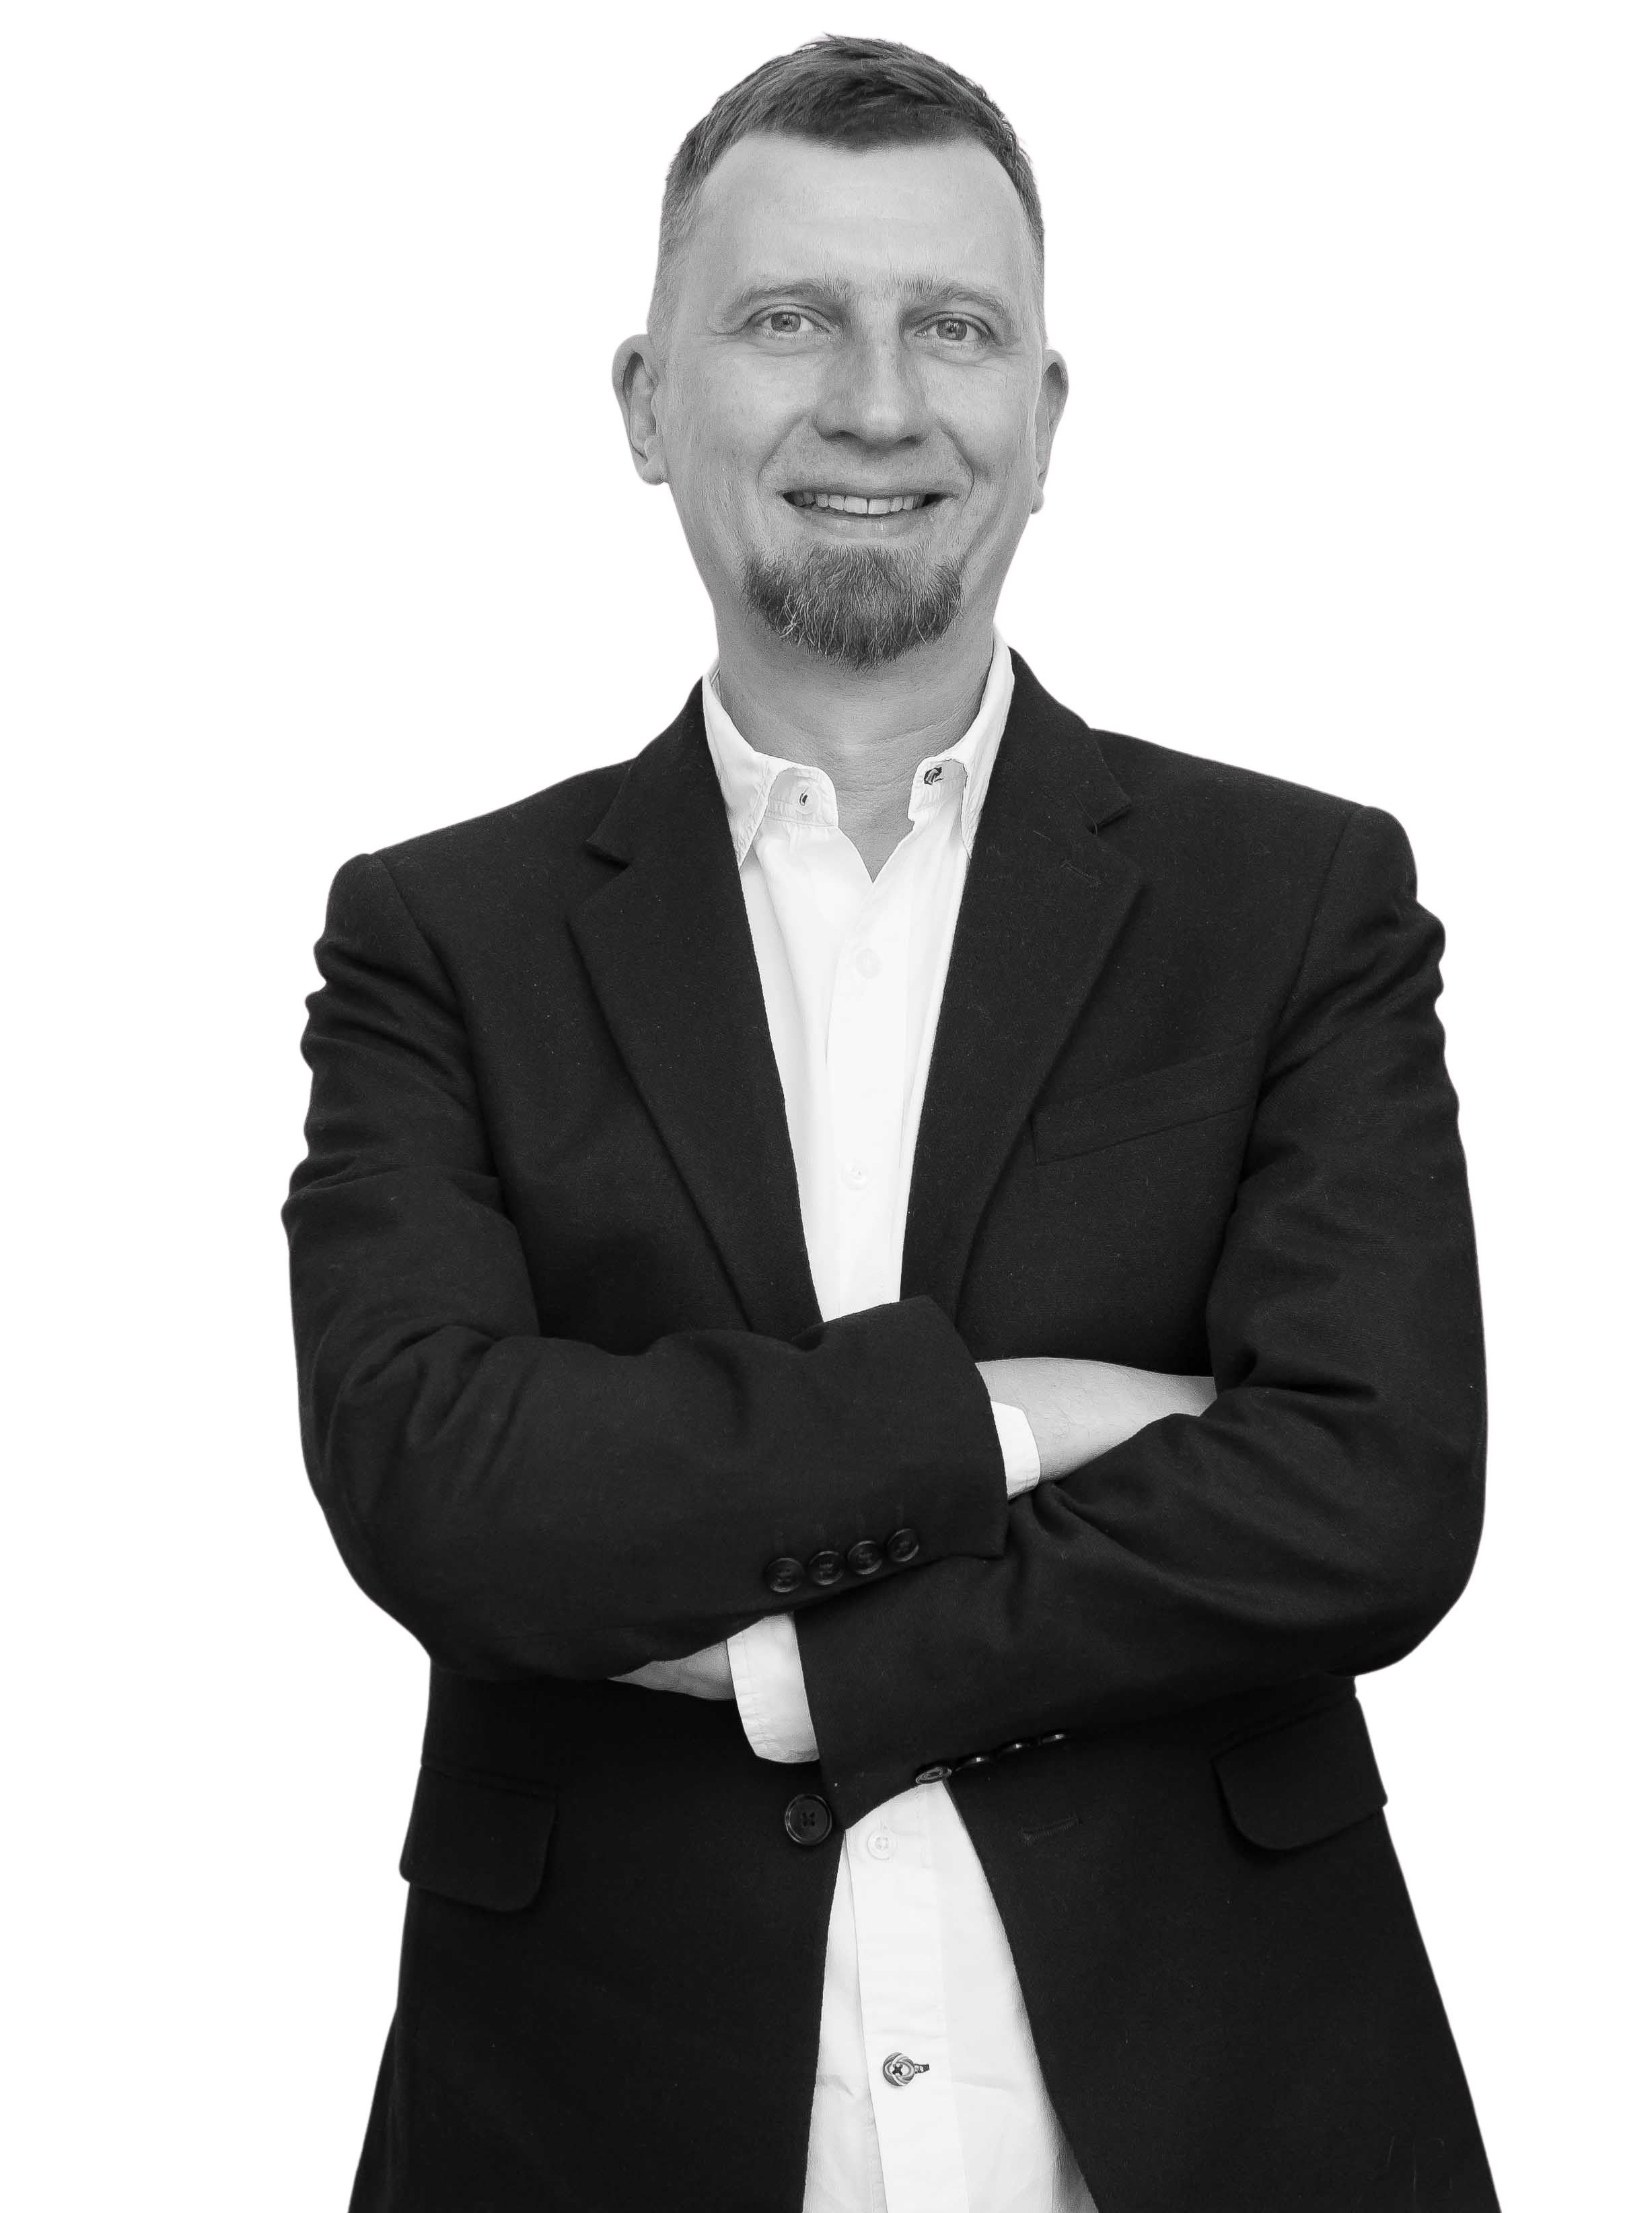 Piotr Orłowski - Radca prawny, doradca restrukturyzacyjny, partner zarządzający w kancelarii OTSP